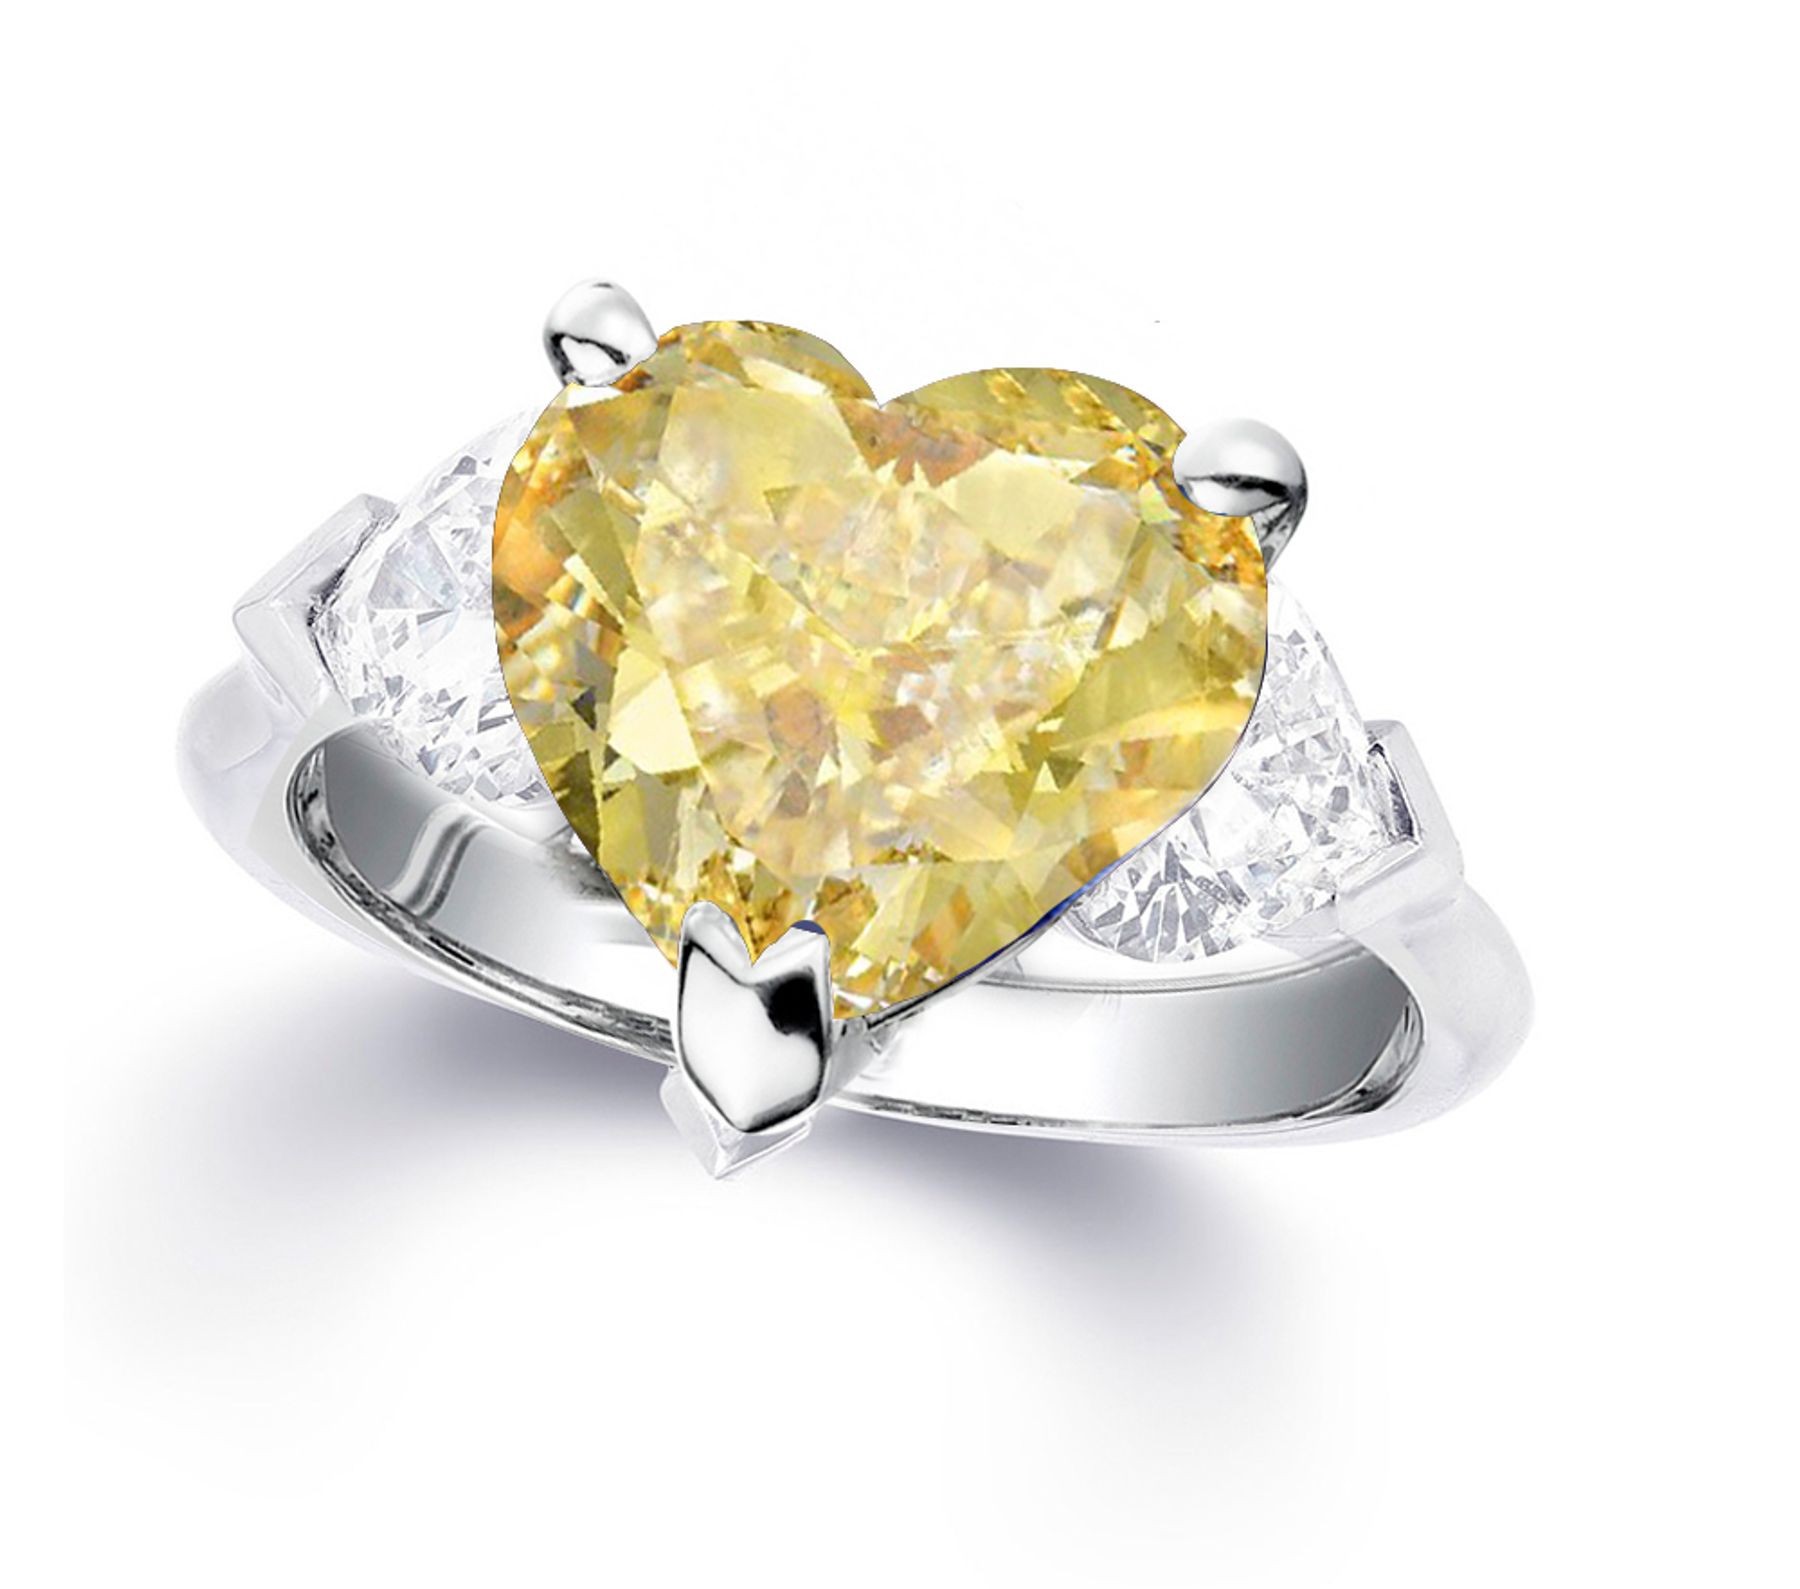 Custom Manufactured Three Stone Heart-Shaped Diamonds & Yellow Sapphire Ring